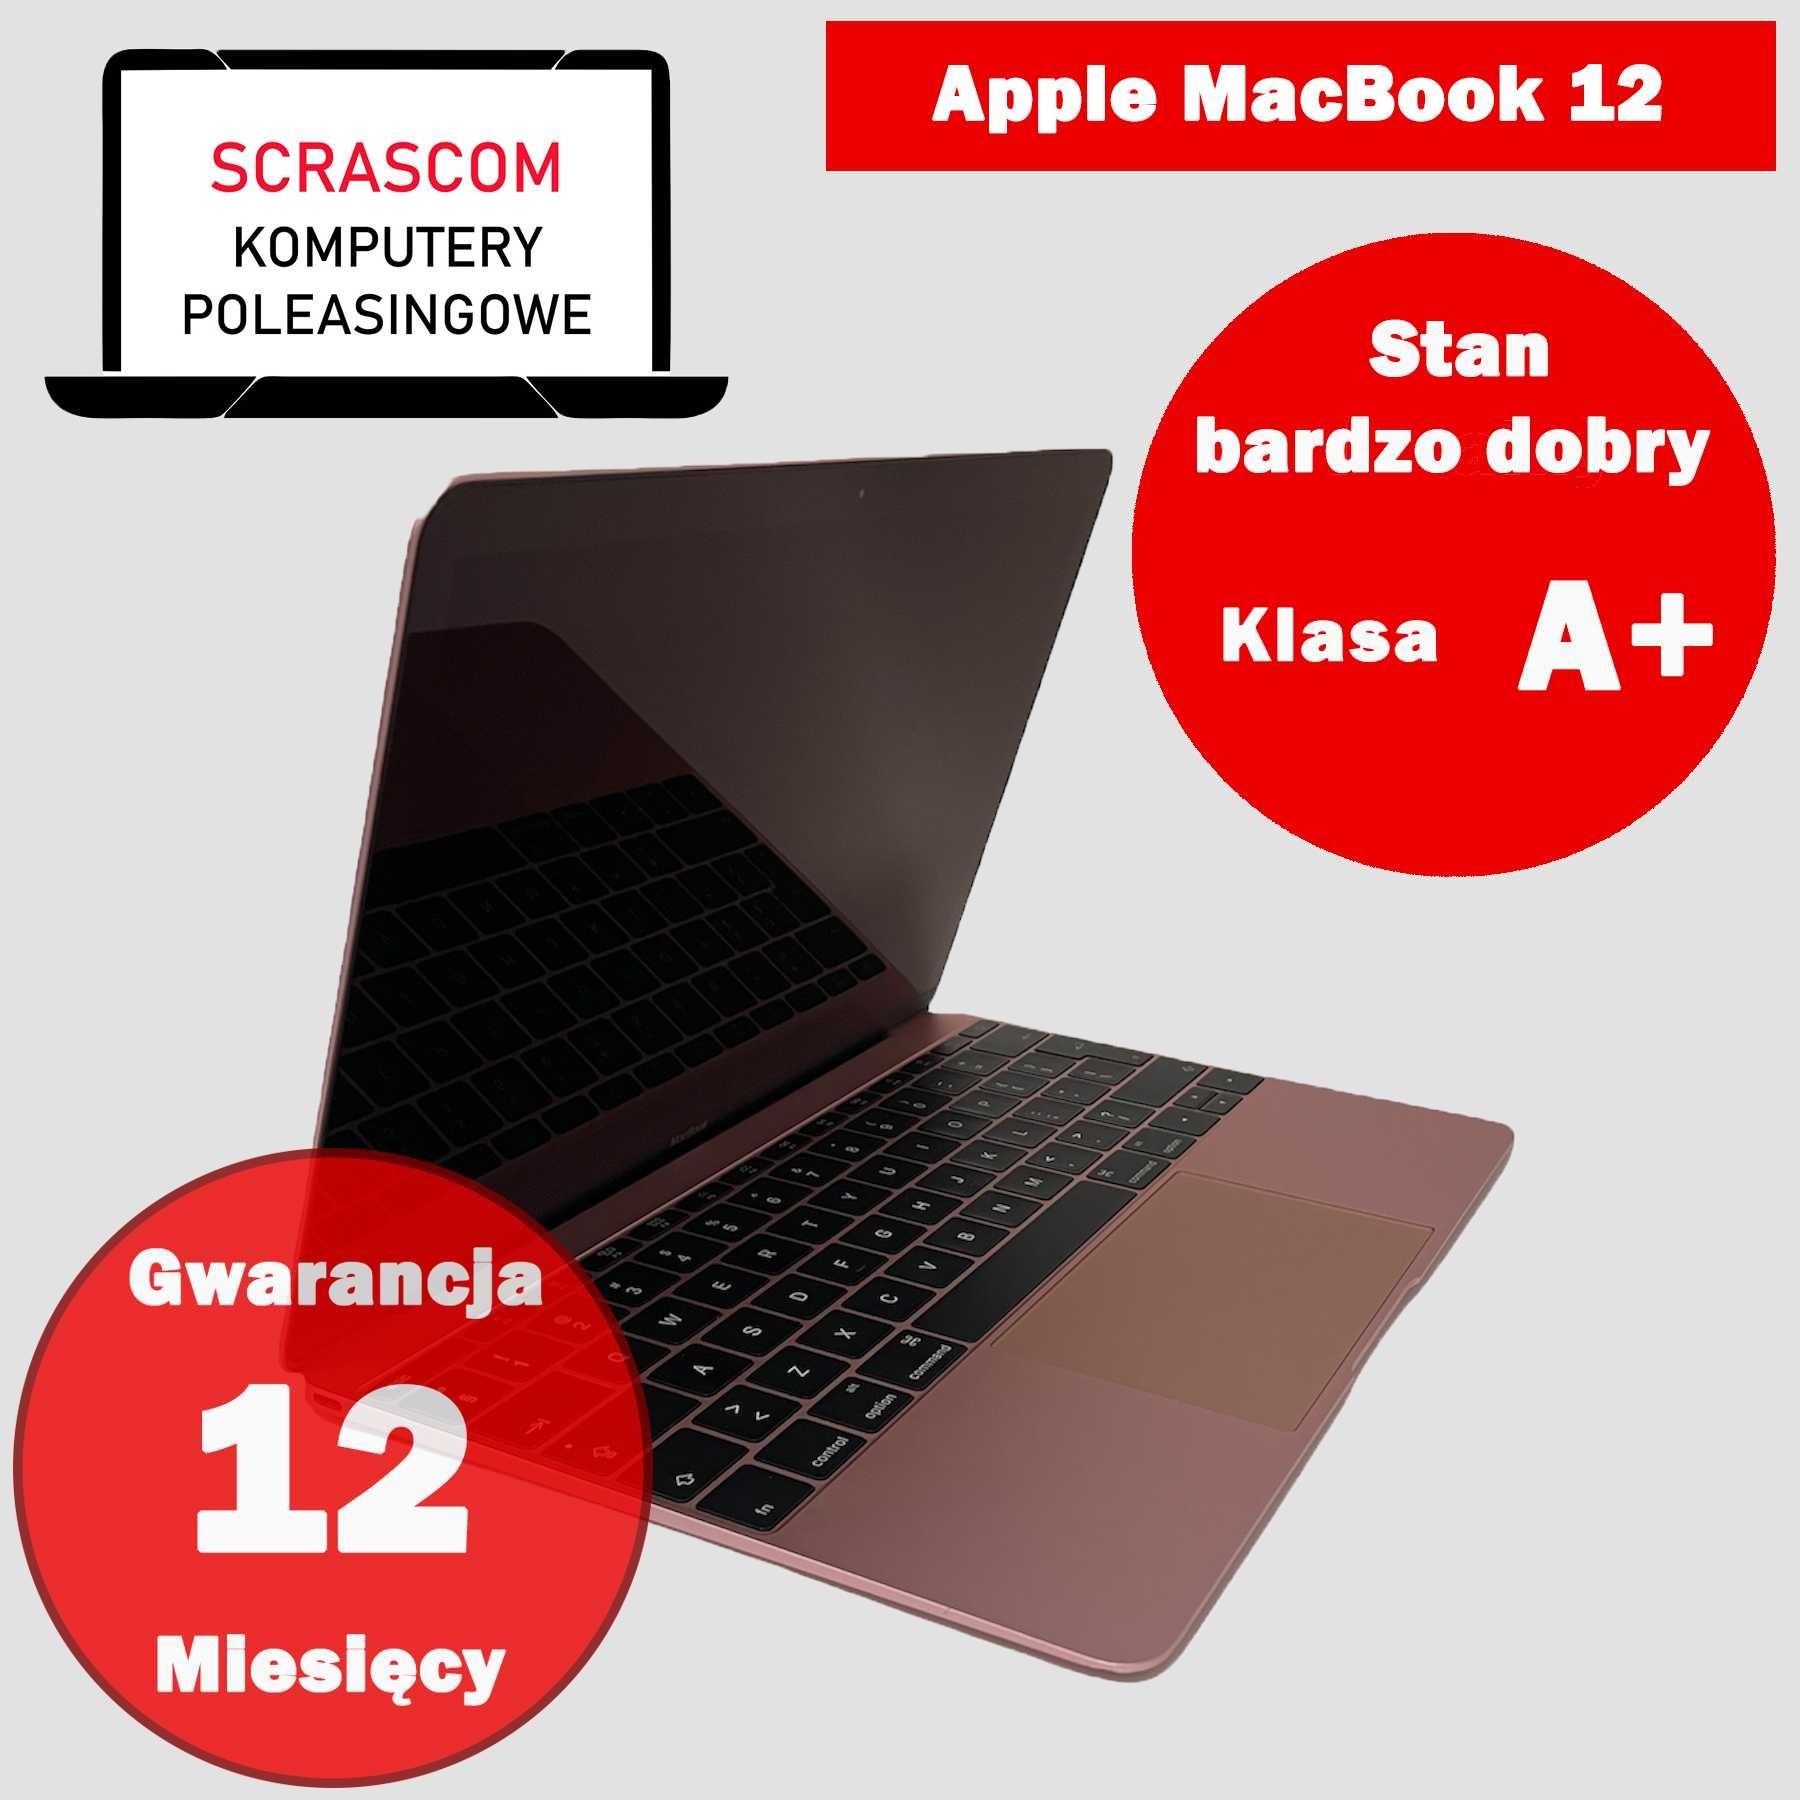 Laptop Apple MacBook 12 Intel 8GB 240GB SSD Retina GWAR 12msc